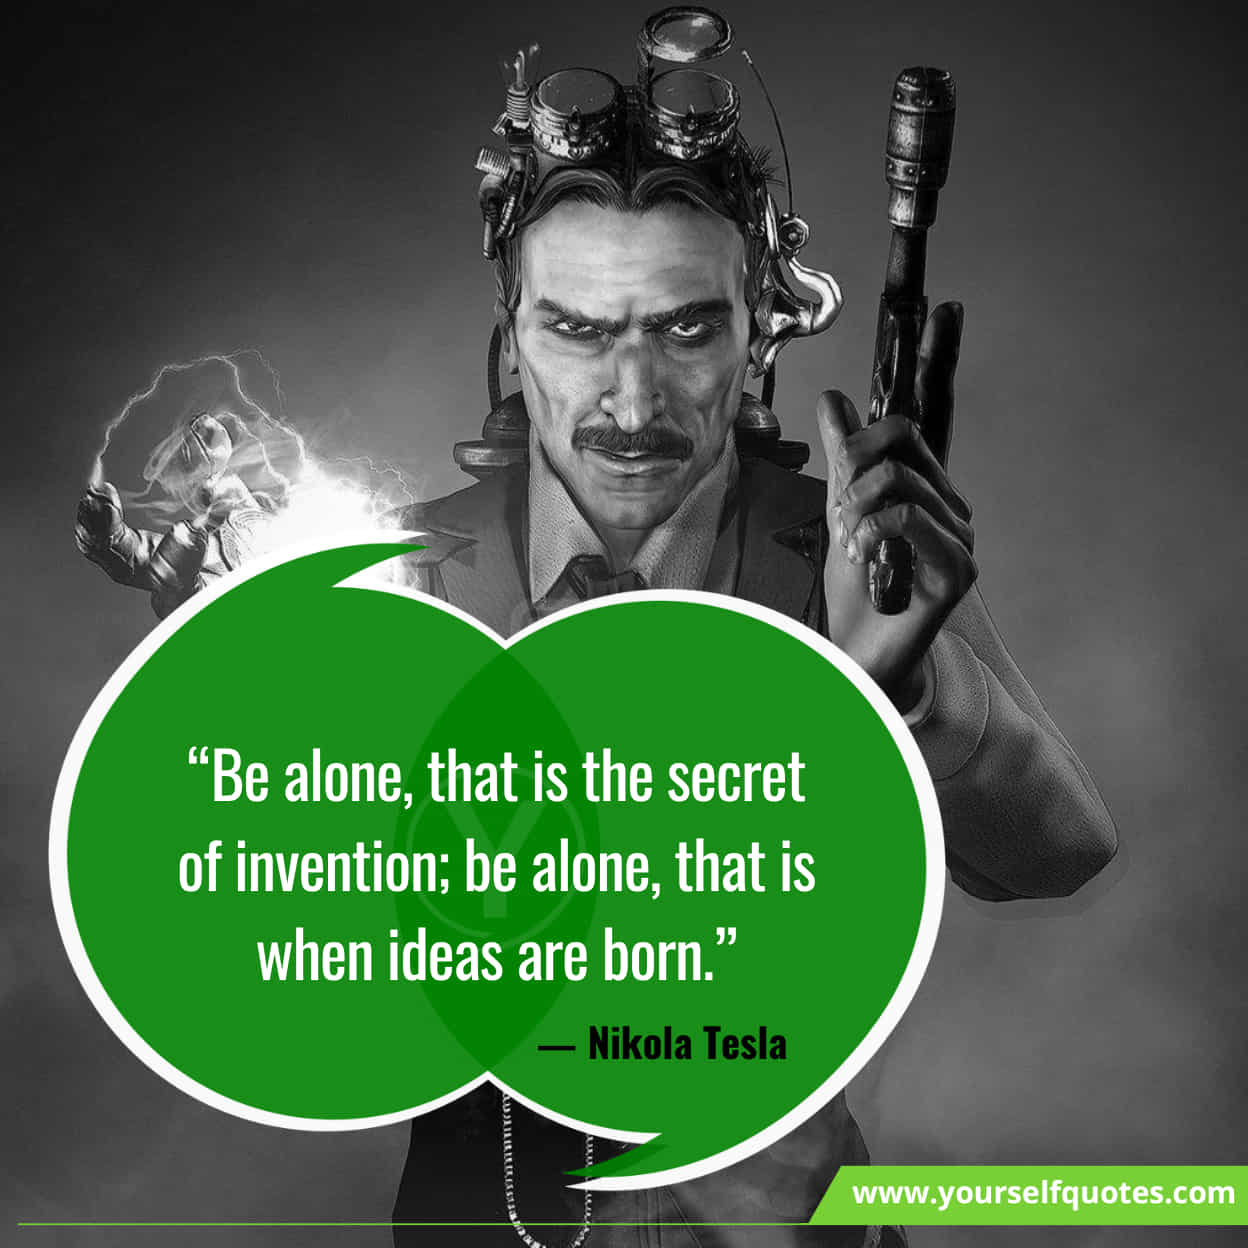 Inspirational Nikola Tesla Quotes